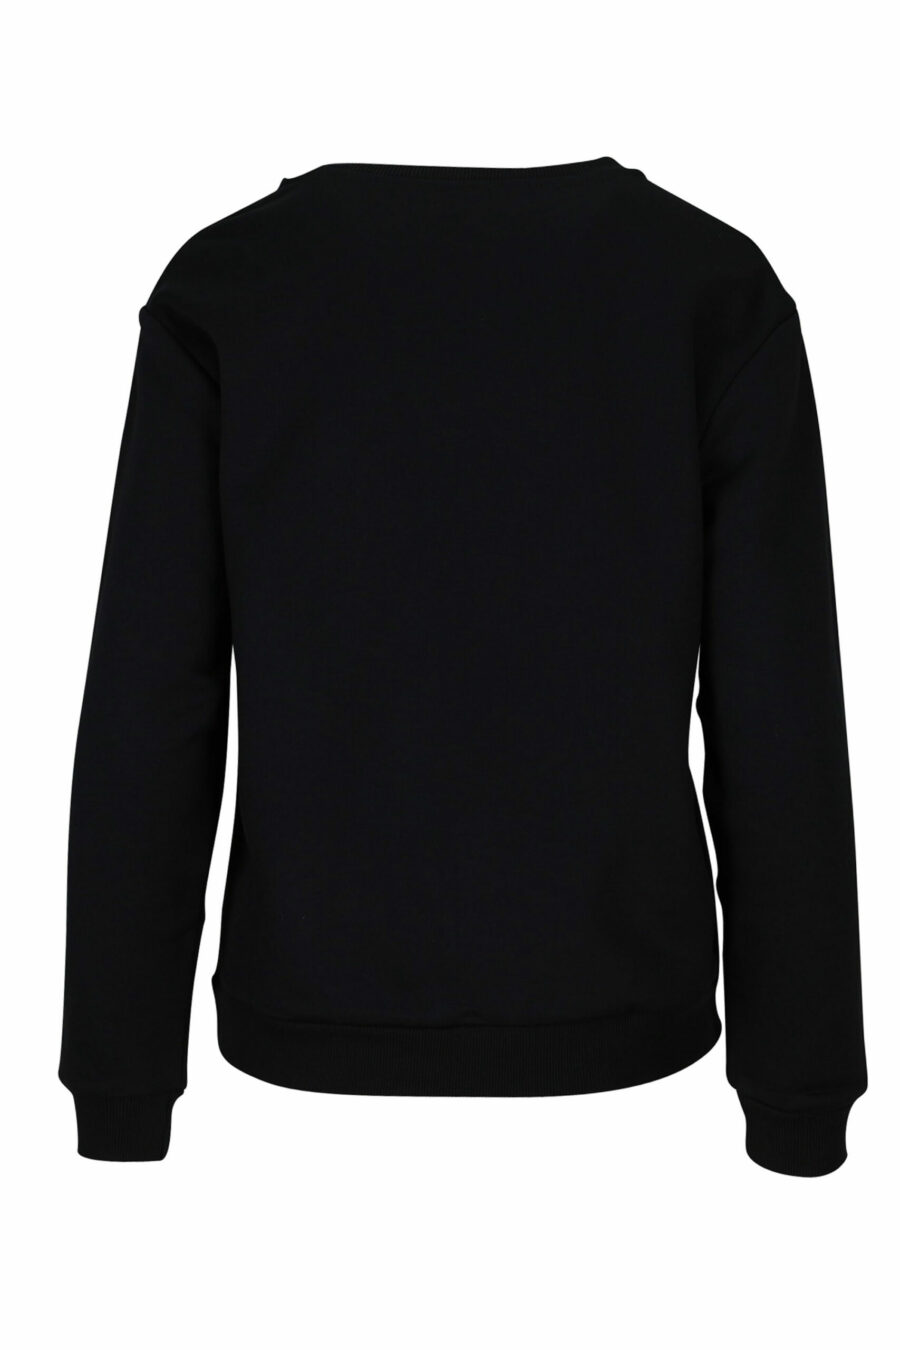 Schwarzes Sweatshirt mit monochromem Bandlogo an den Seiten - 889316614961 2 skaliert